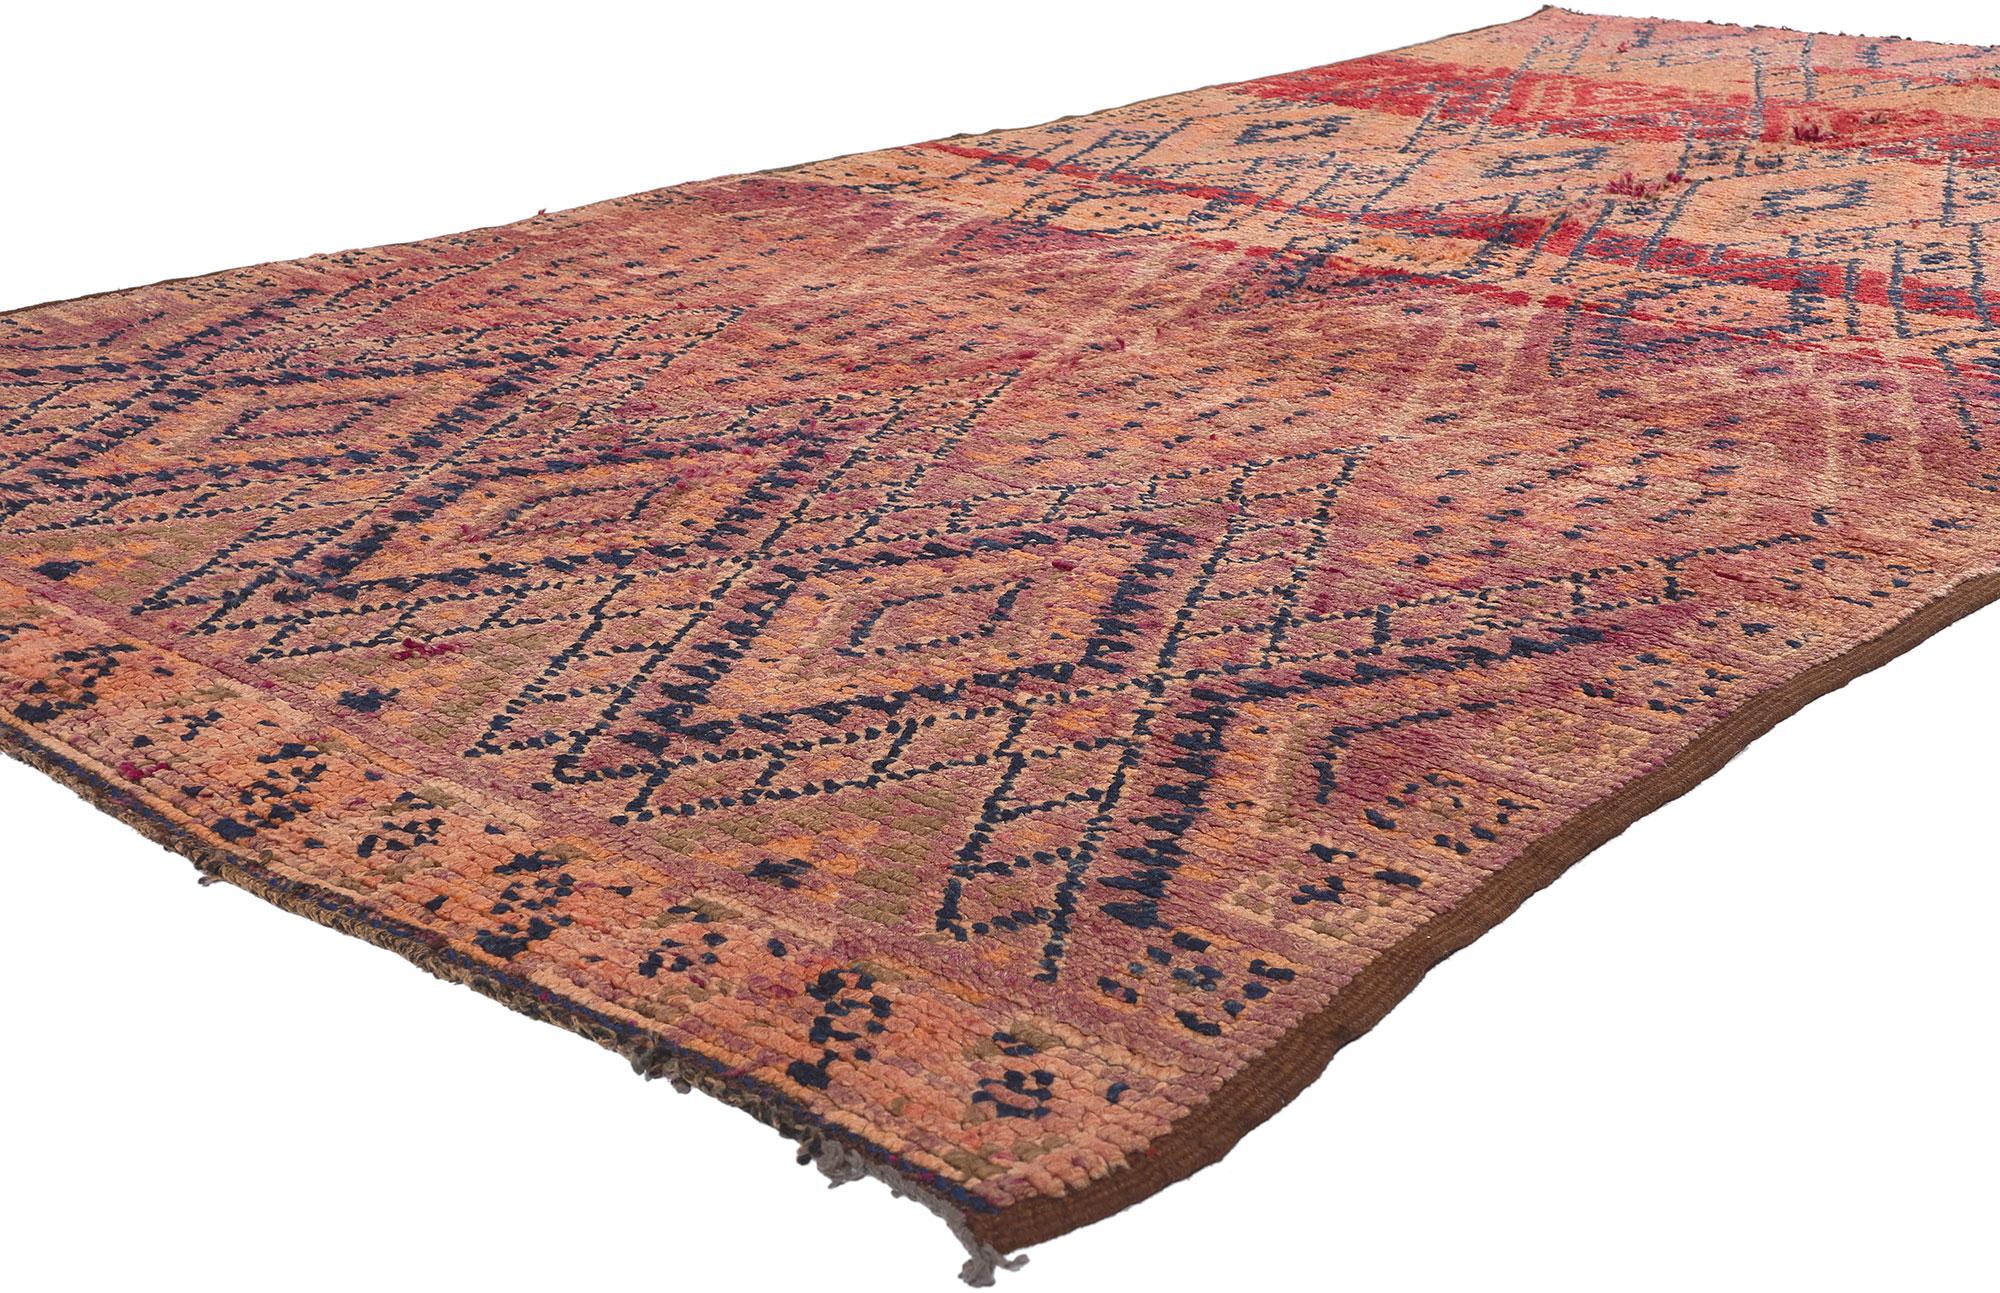 21346 Vintage Beni MGuild Marokkanischer Teppich, 05'04 x 10'01. Die Teppiche von Beni Mguild, die mit dem bezaubernden Fachwissen der Berberfrauen vom Stamm der Ait M'Guild im mystischen Atlasgebirge in Marokko gewebt wurden, werden für ihre